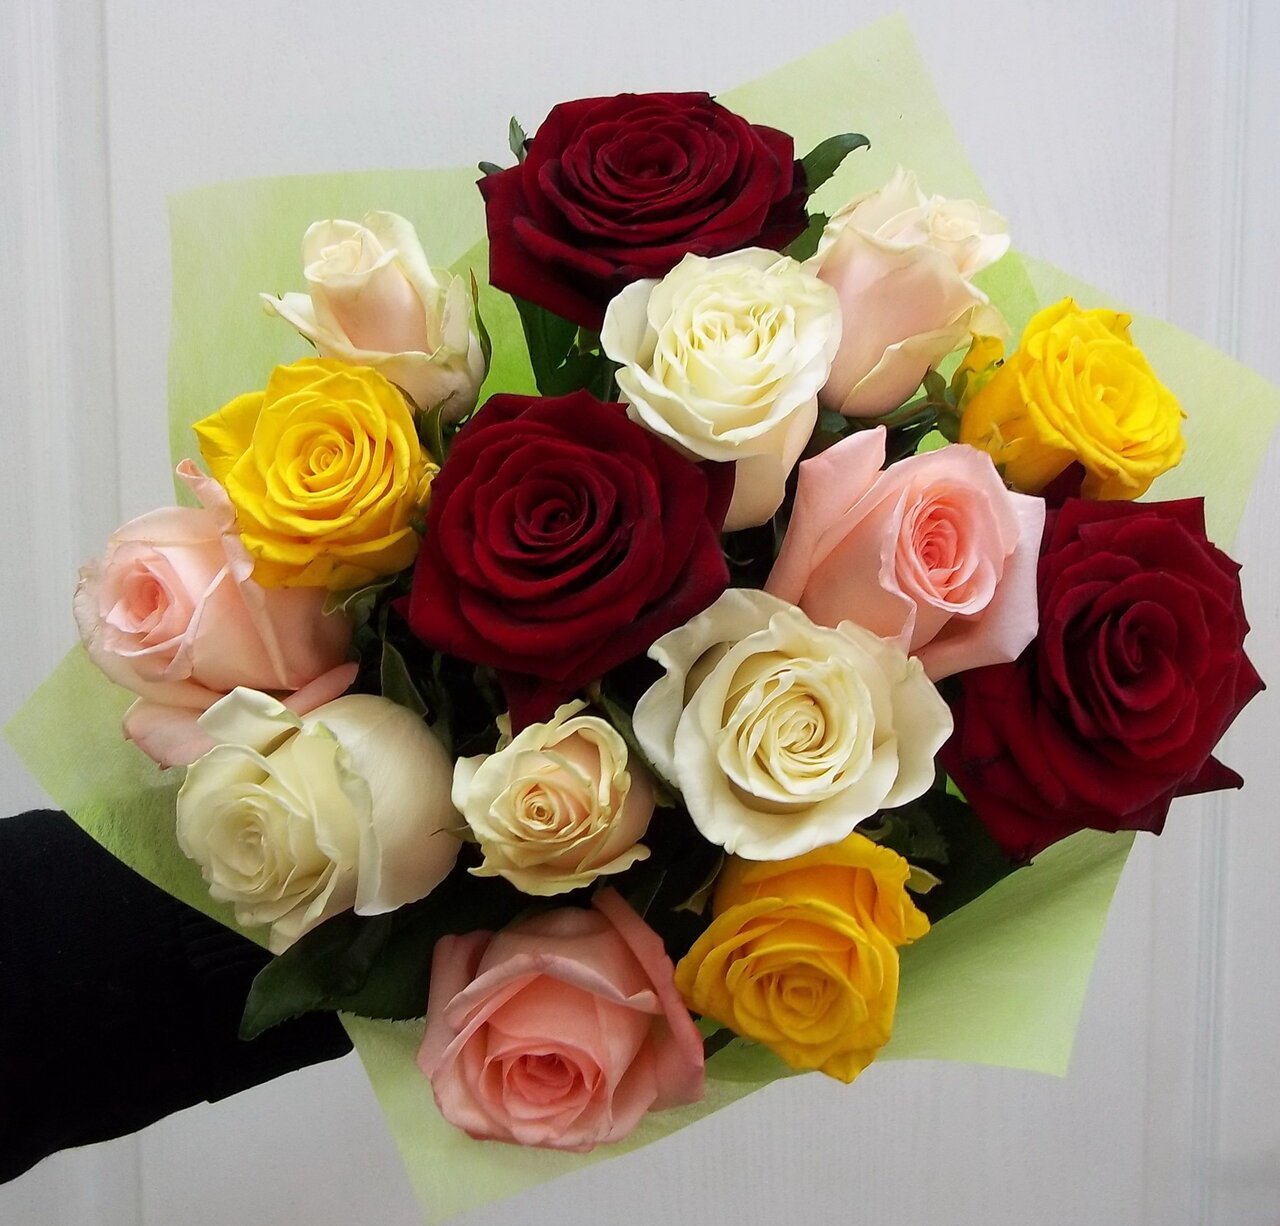 Букет из 15 разноцветных роз